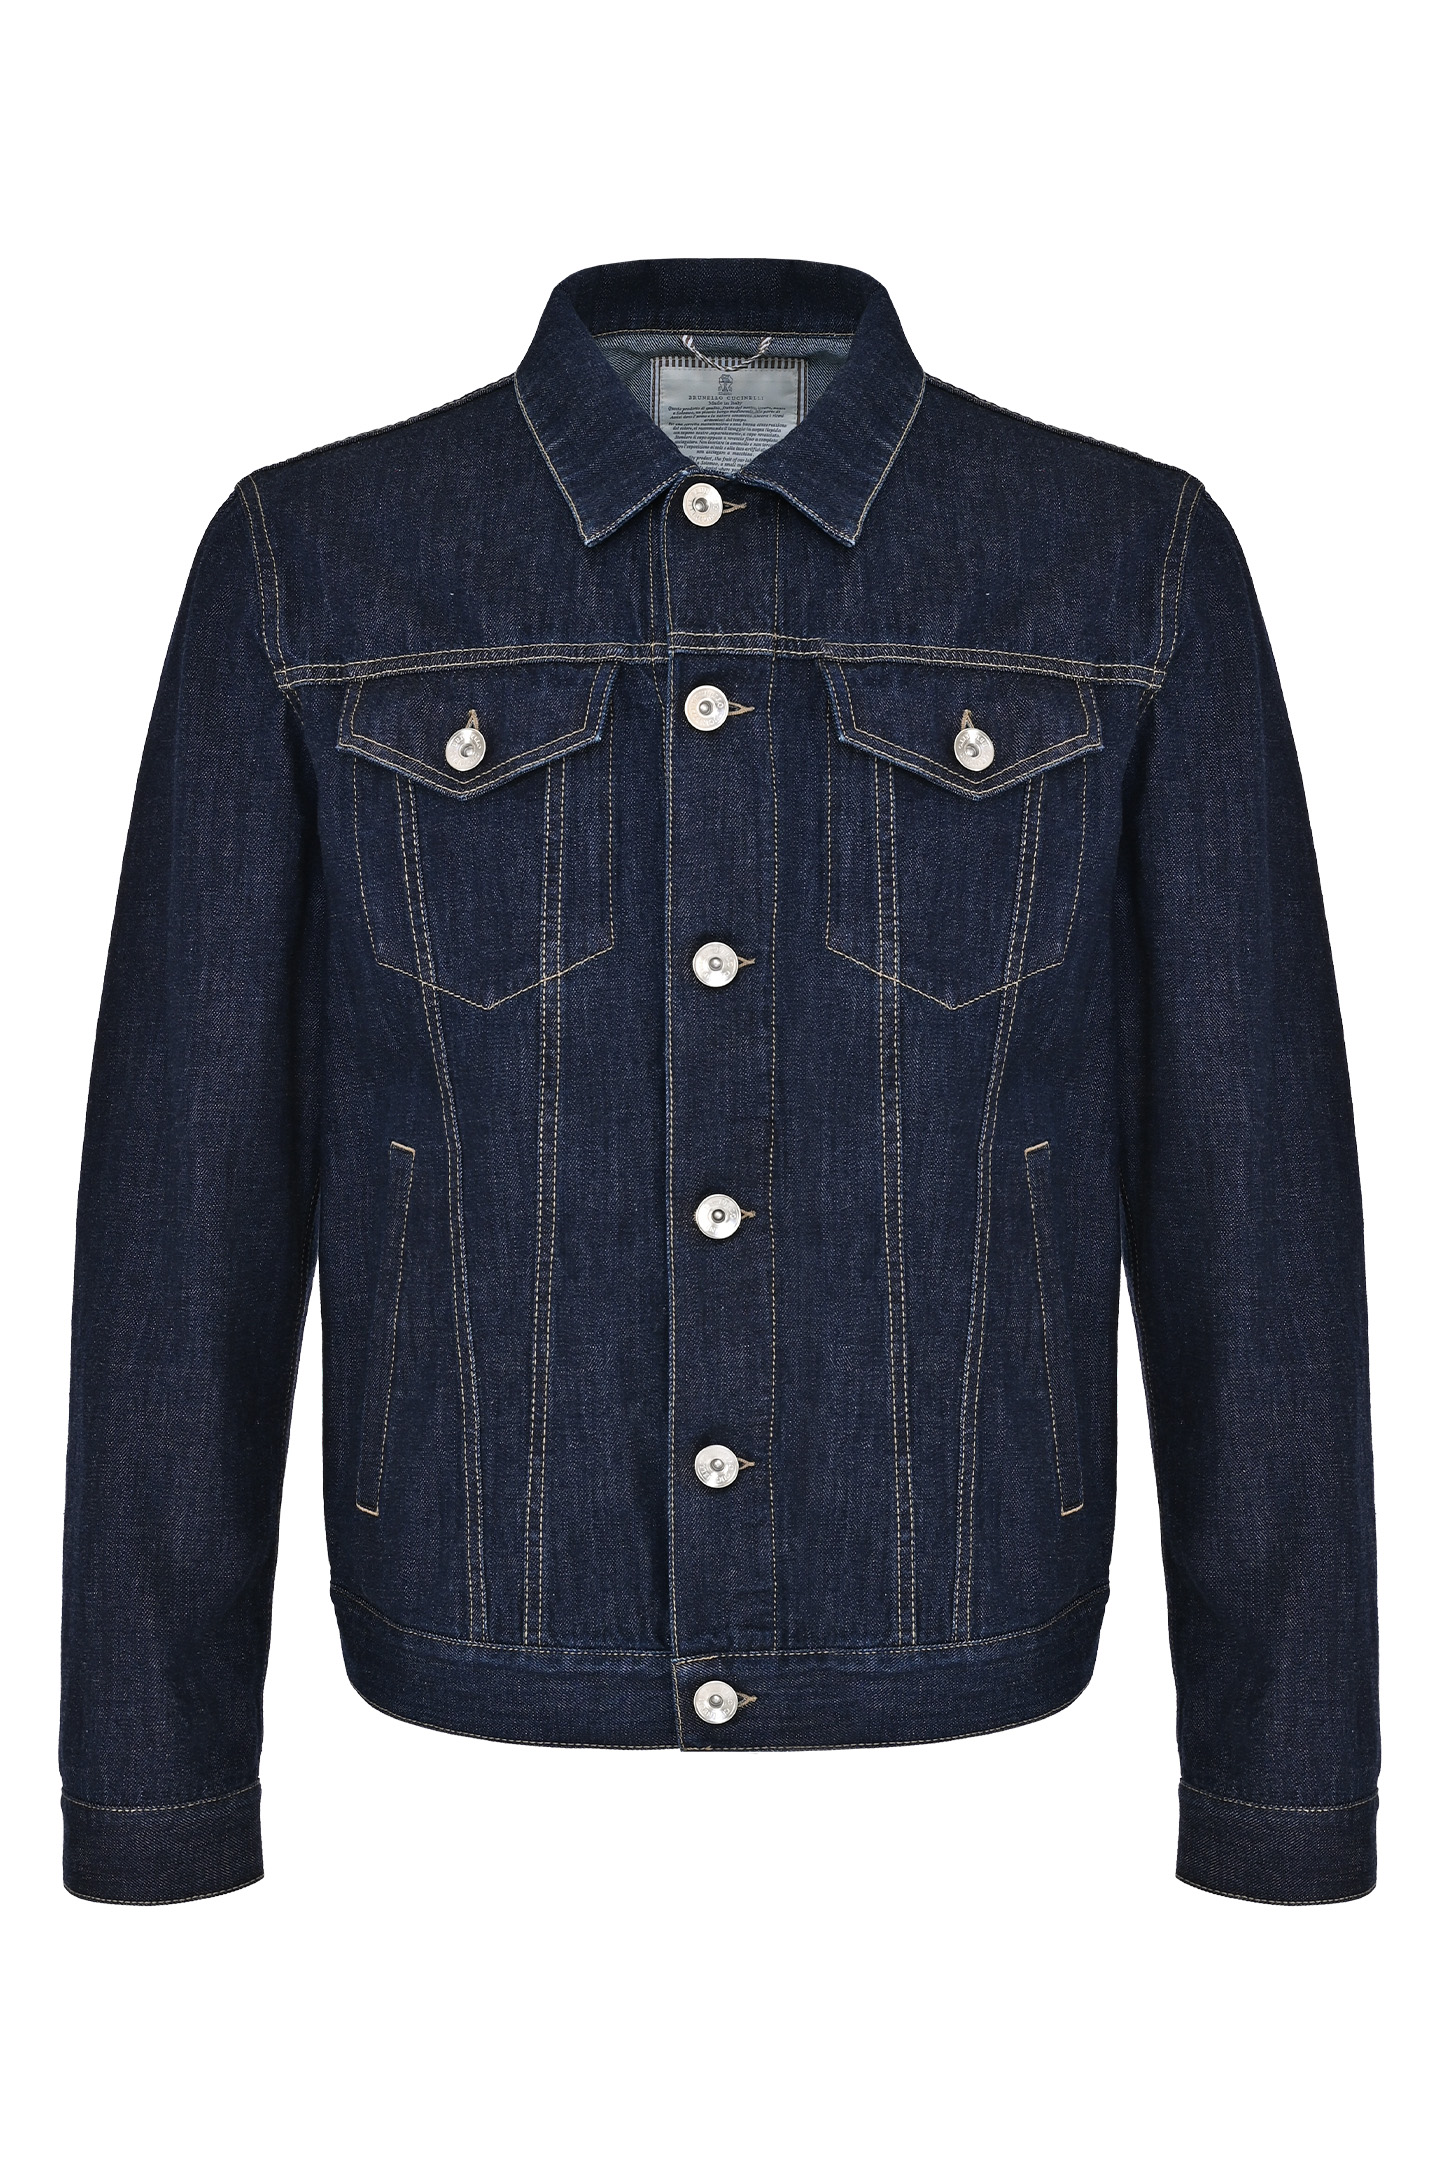 Джинсовая куртка с карманами BRUNELLO  CUCINELLI M0Z376896, цвет: Темно-синий, Мужской